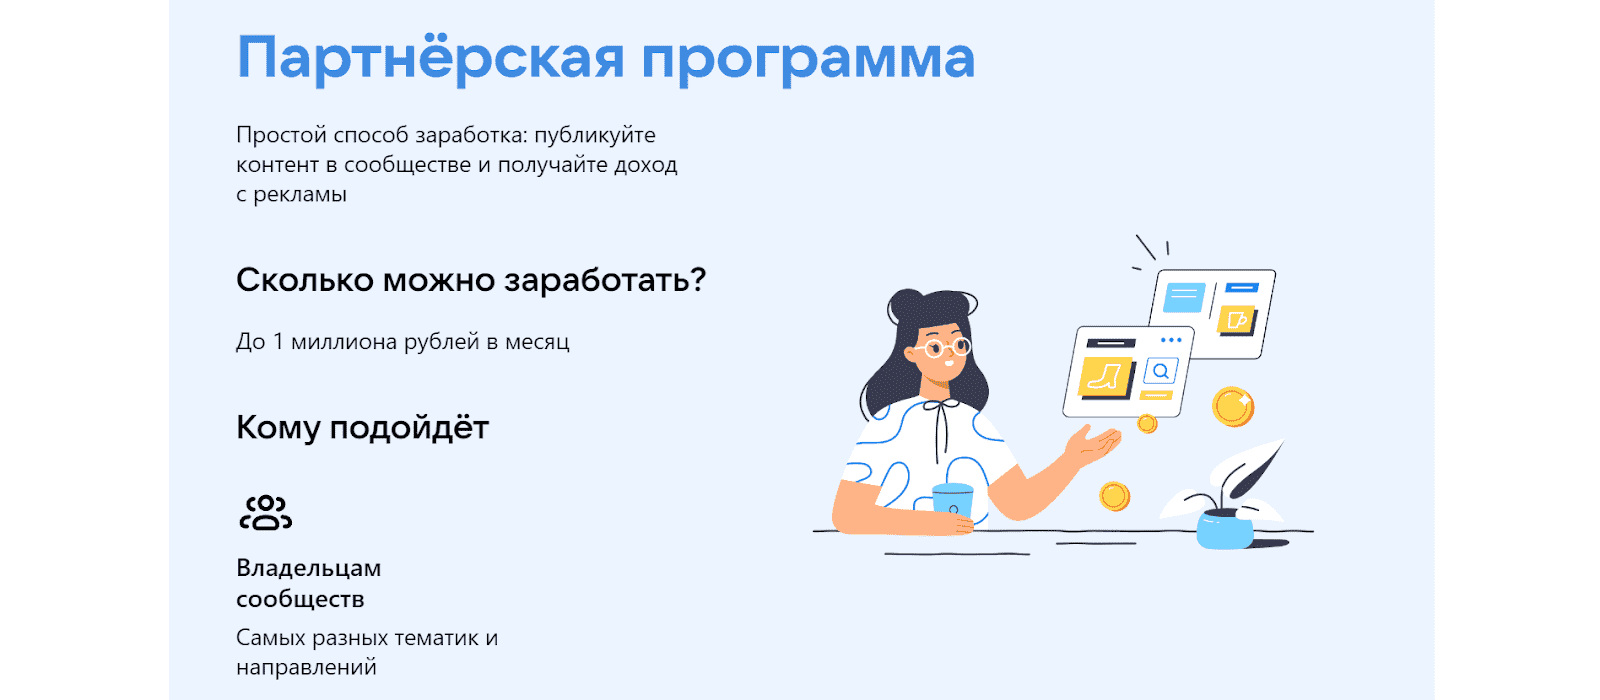 Партнерская программа Вконтакте